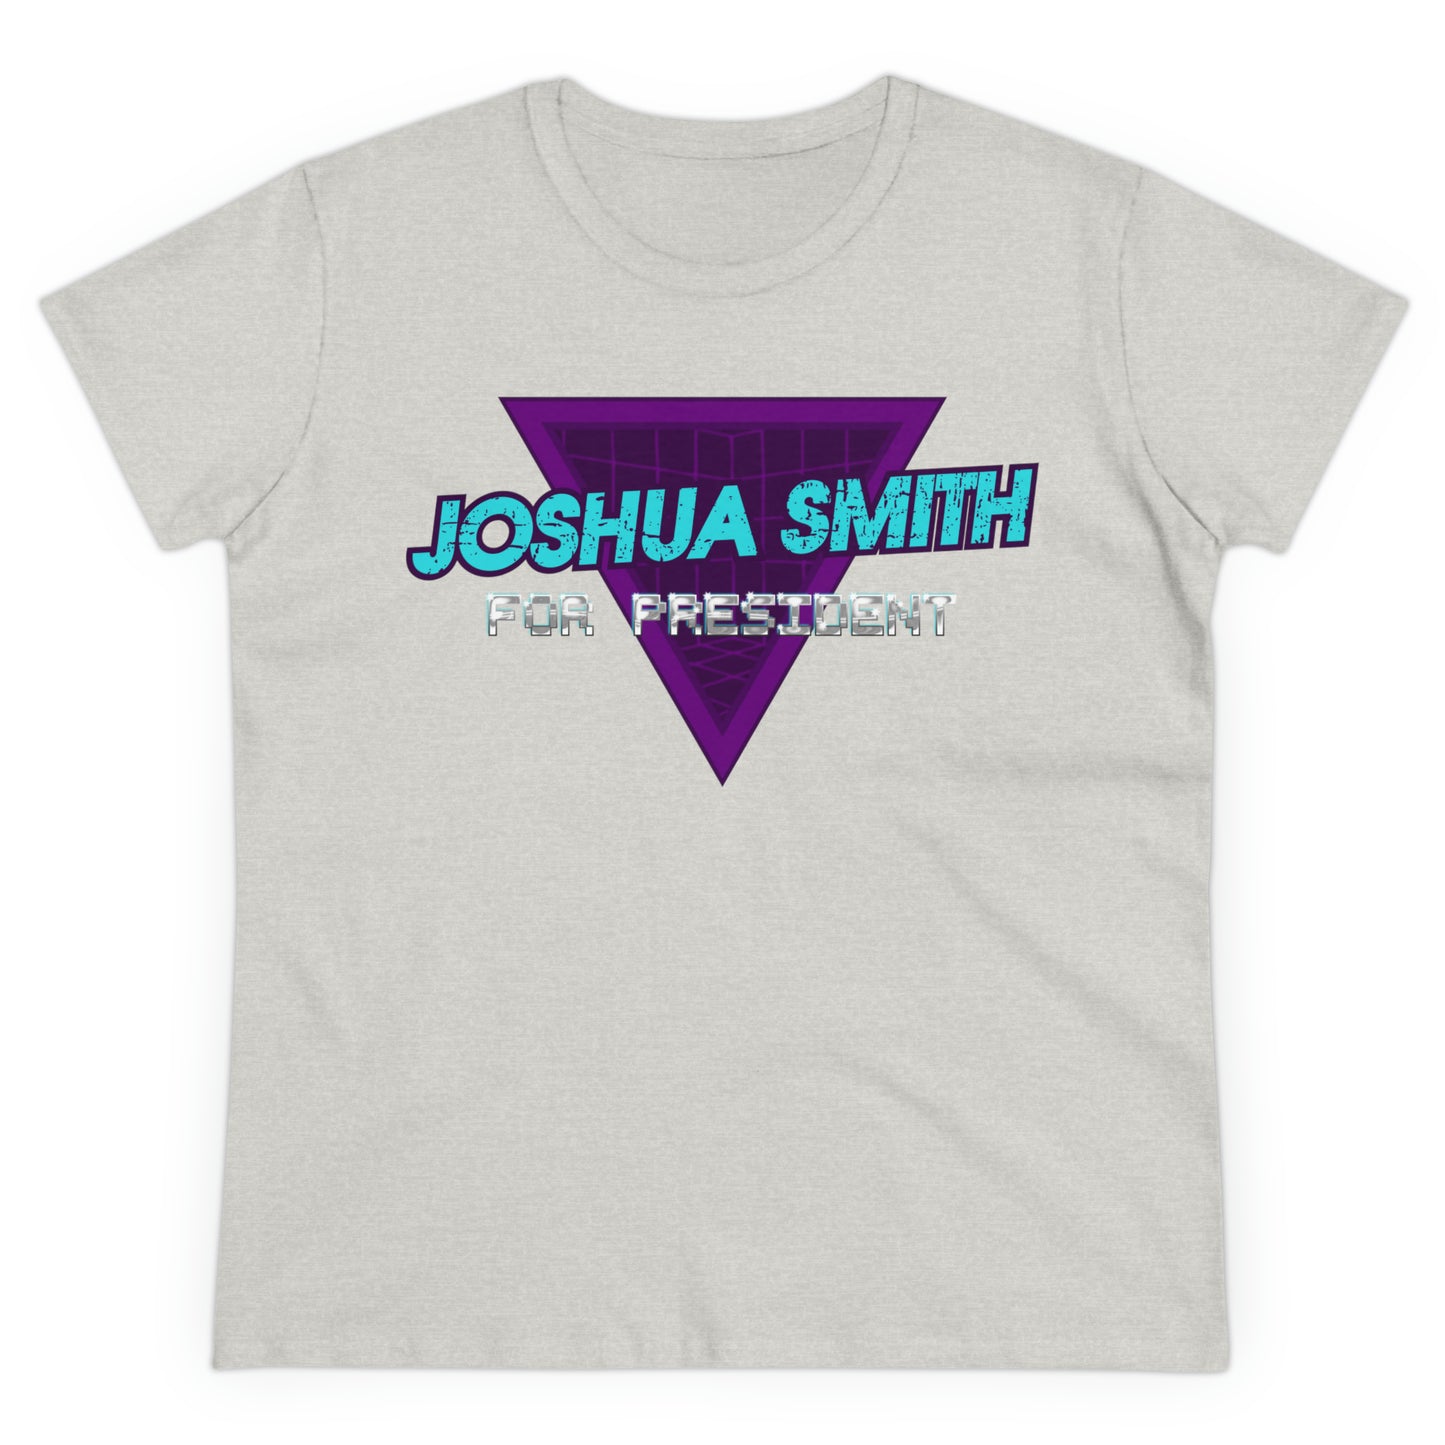 "Joshua Smith for POTUS" Women's Tee